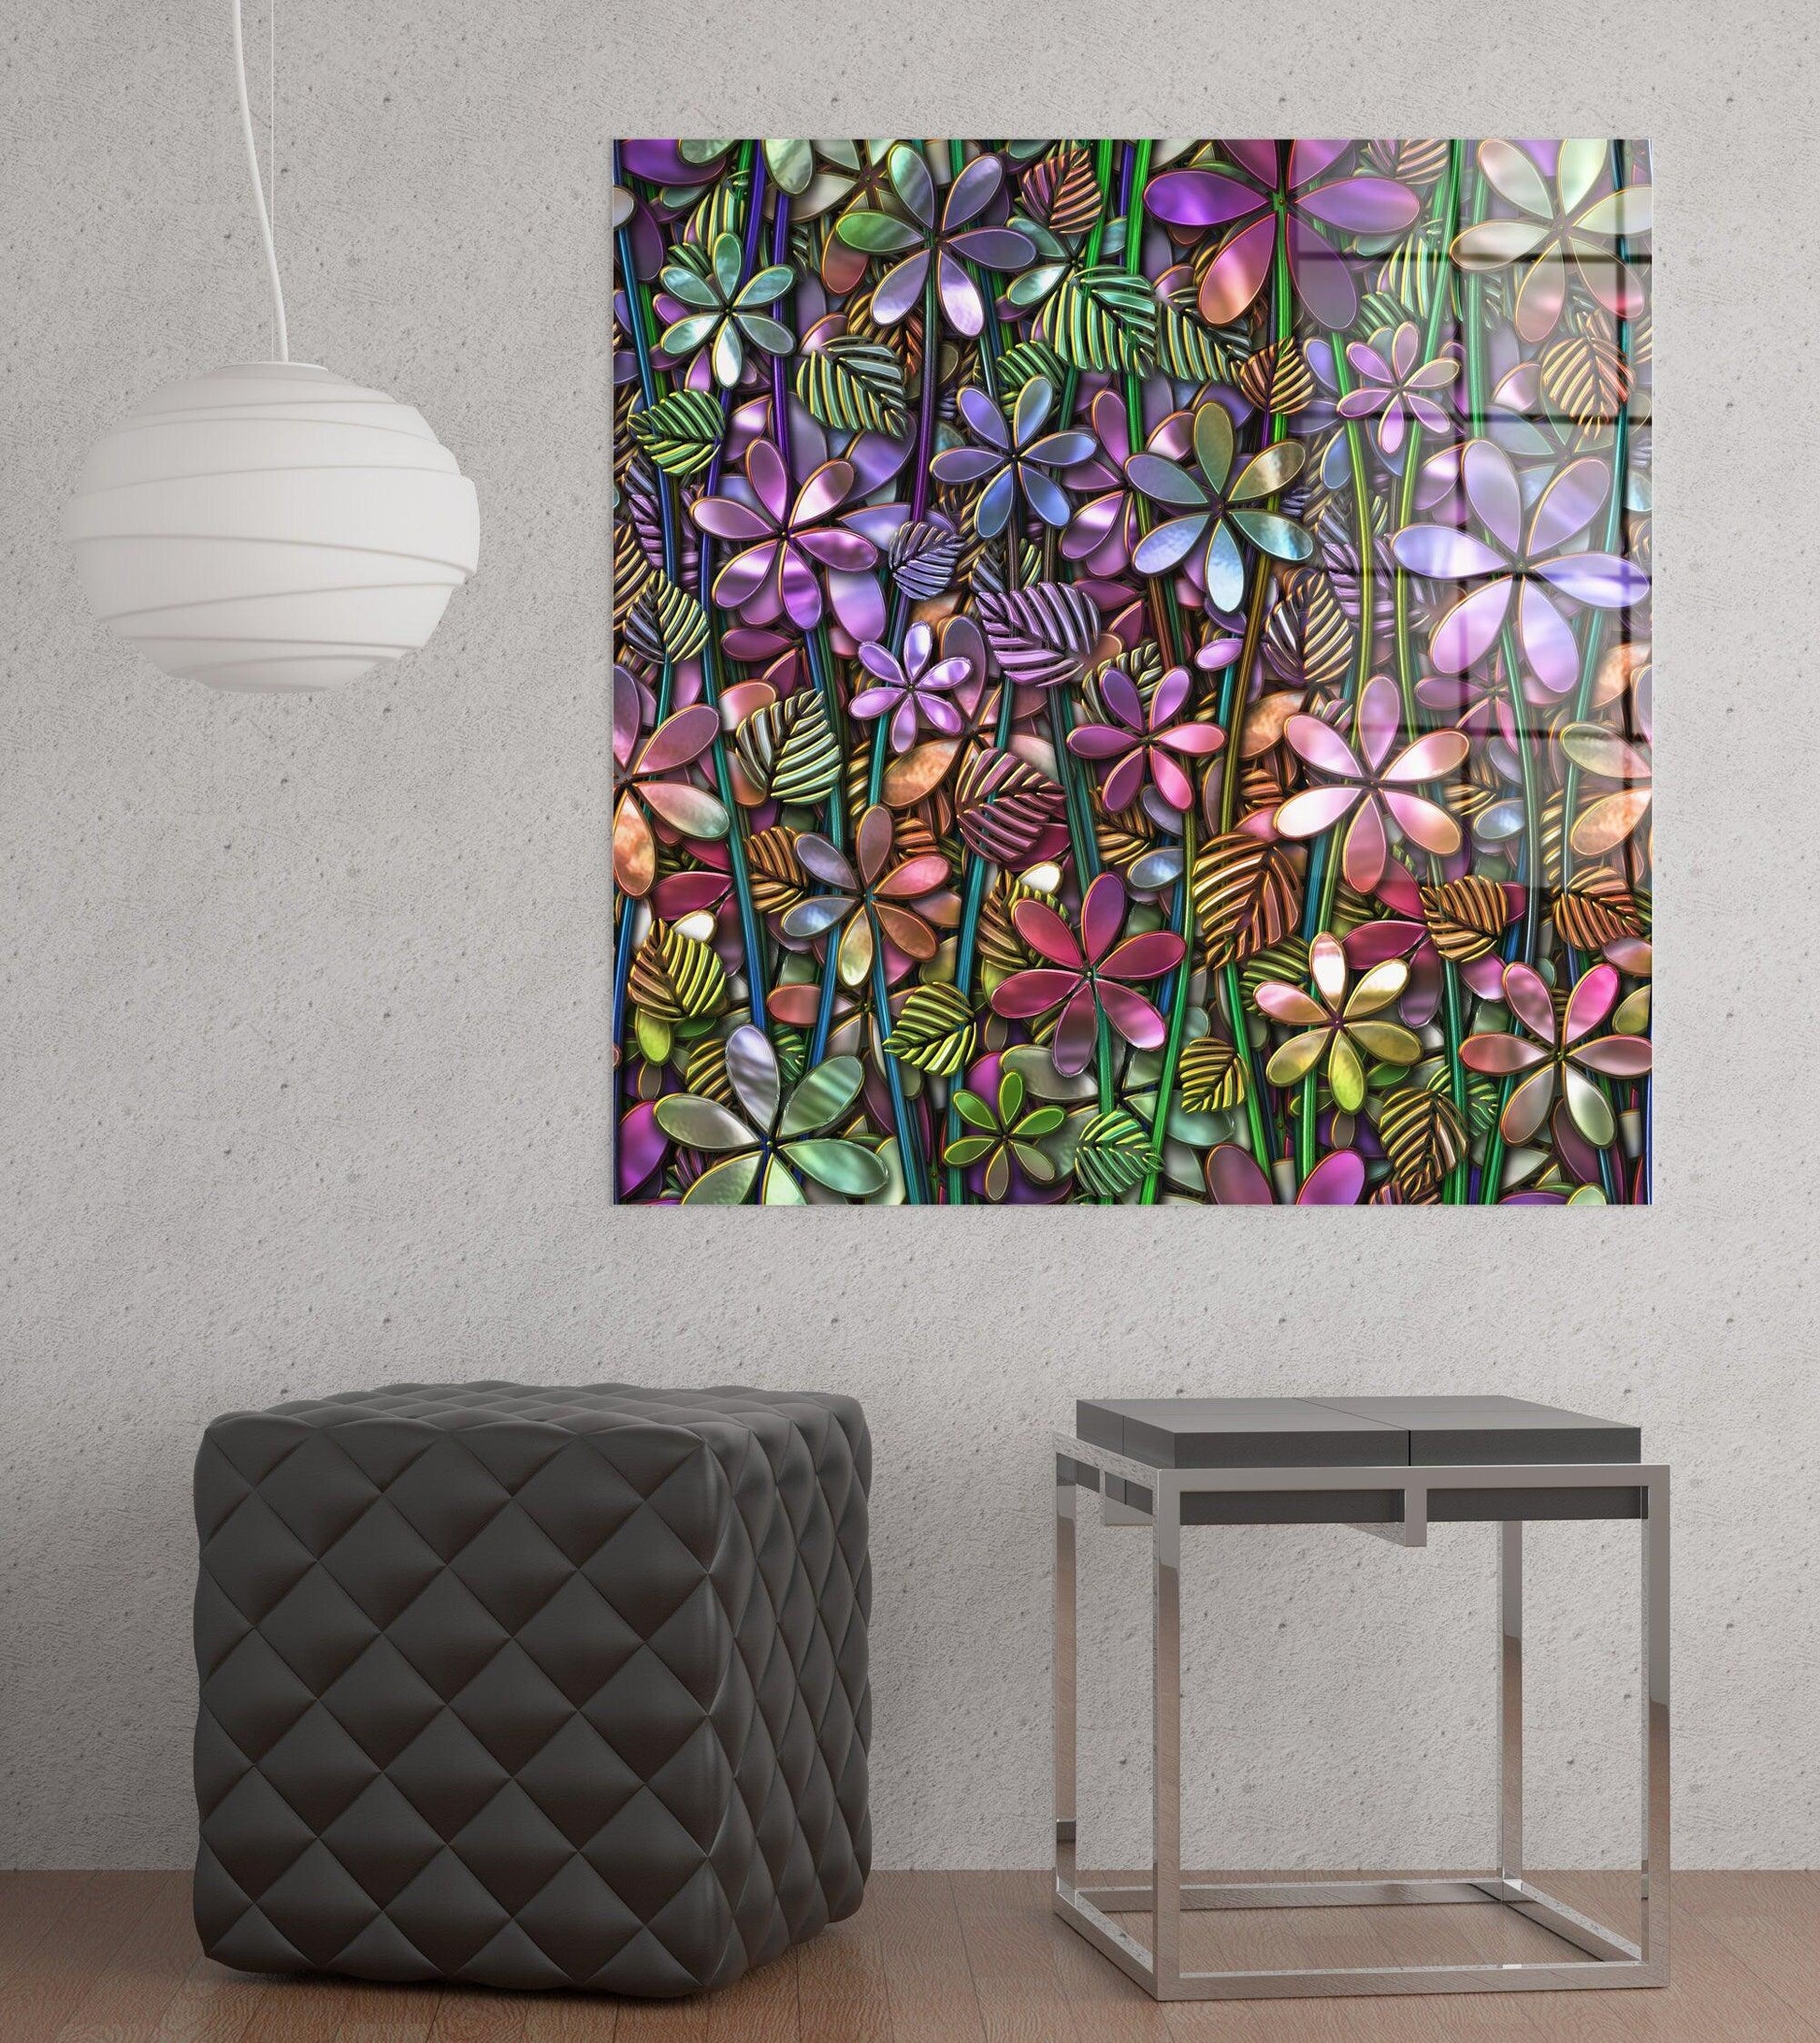 3d flower Glass Wall Art |Flower Wall Art-Mosaic glass Wall Art, 3d wall art decor 3d canvas wall art, 3d flowers glass wall art, home decor